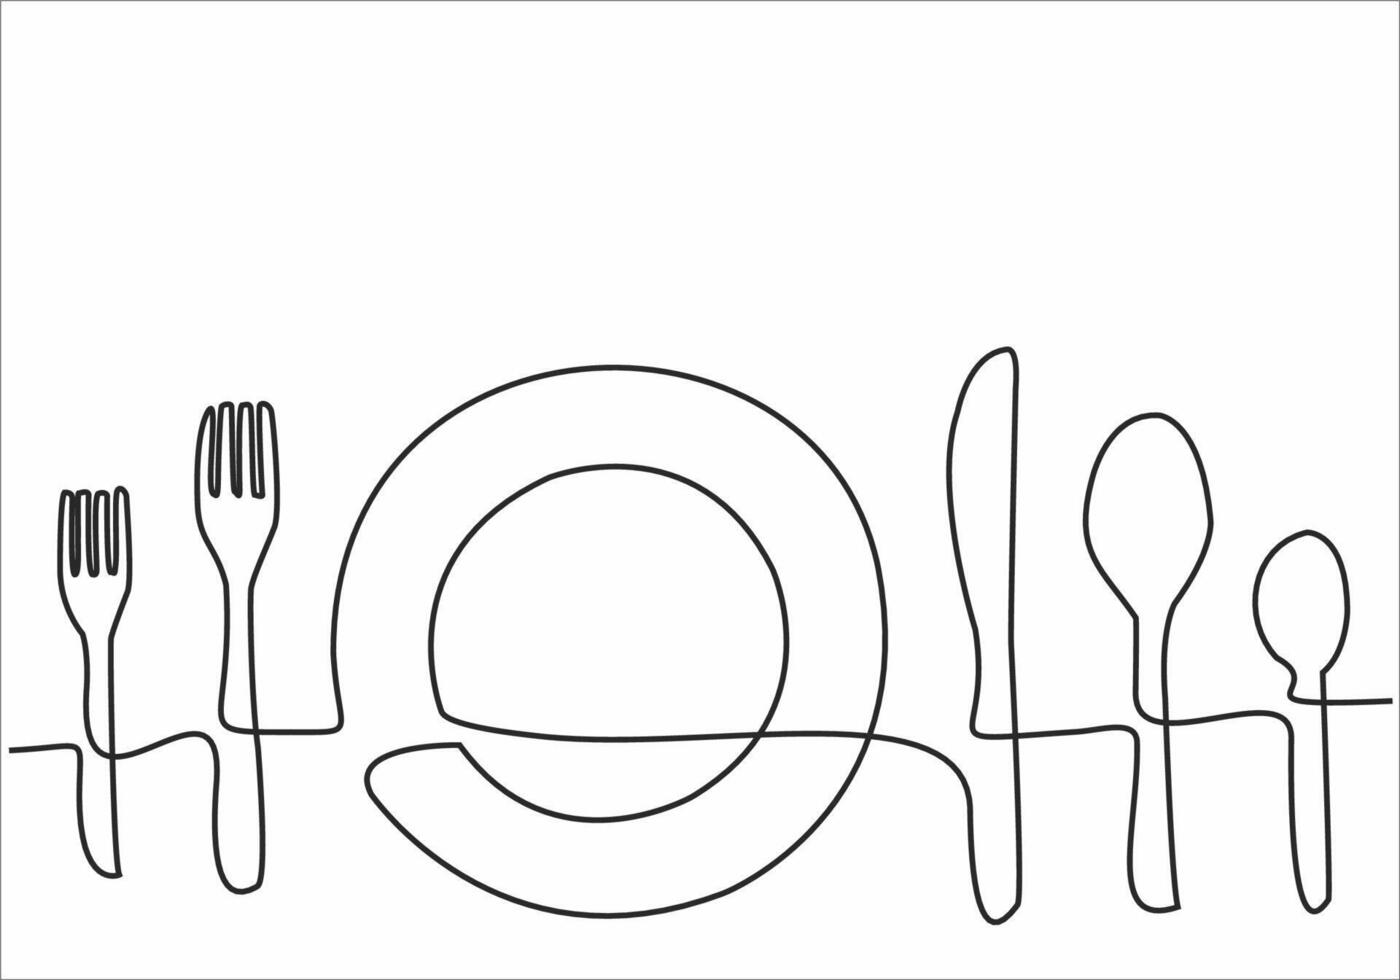 dessin au trait continu de logo de cuisine vecteur